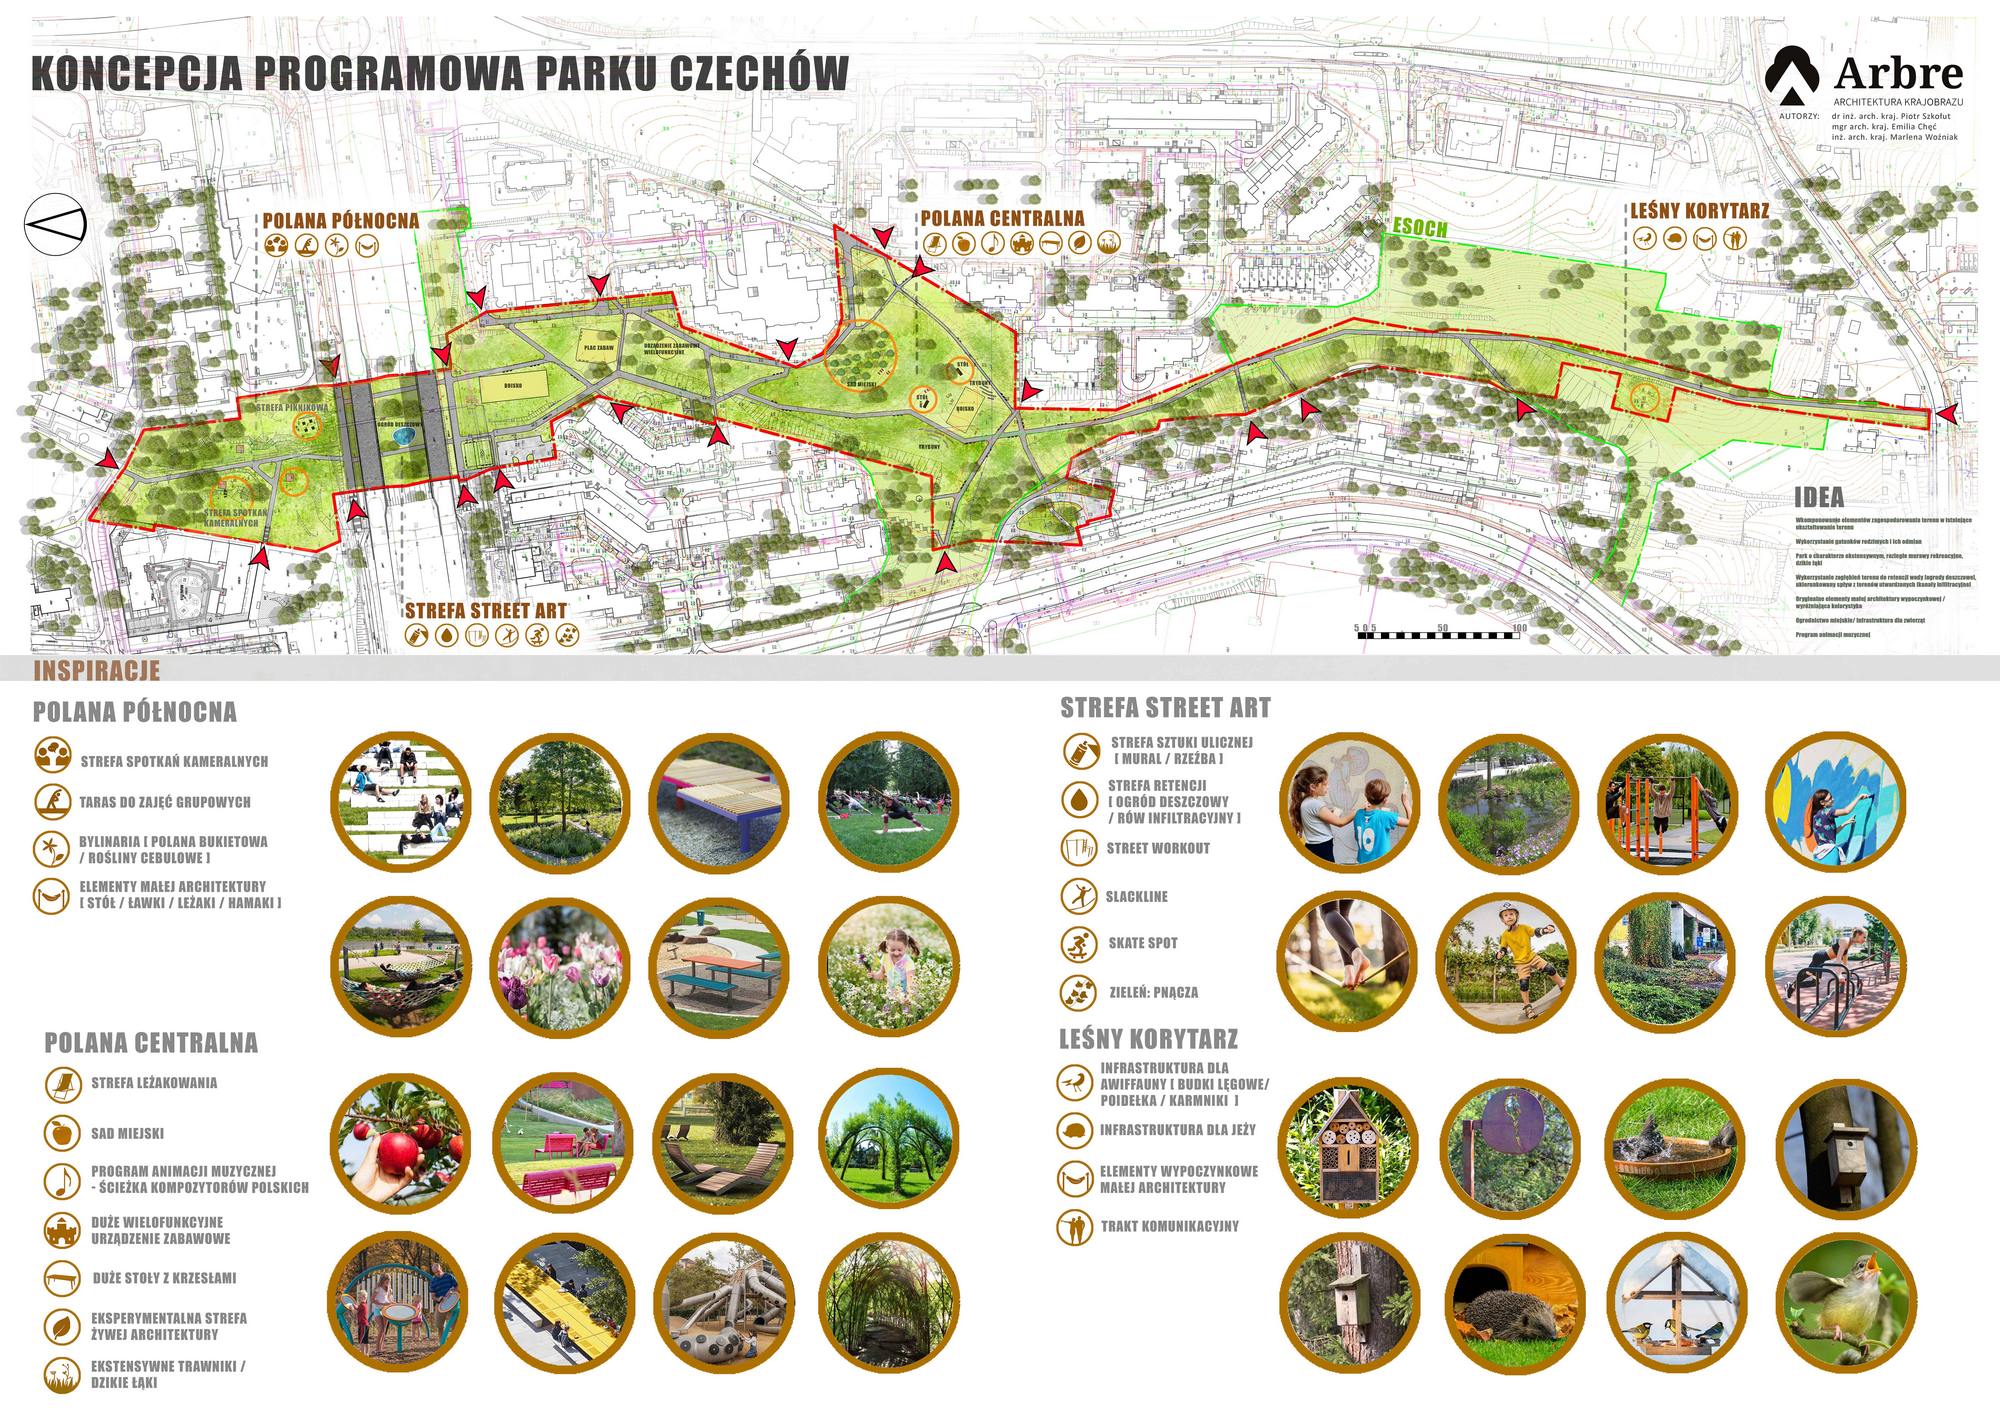 Miasto zaprezentowało naturalistyczną koncepcję parku w wąwozie Czechów